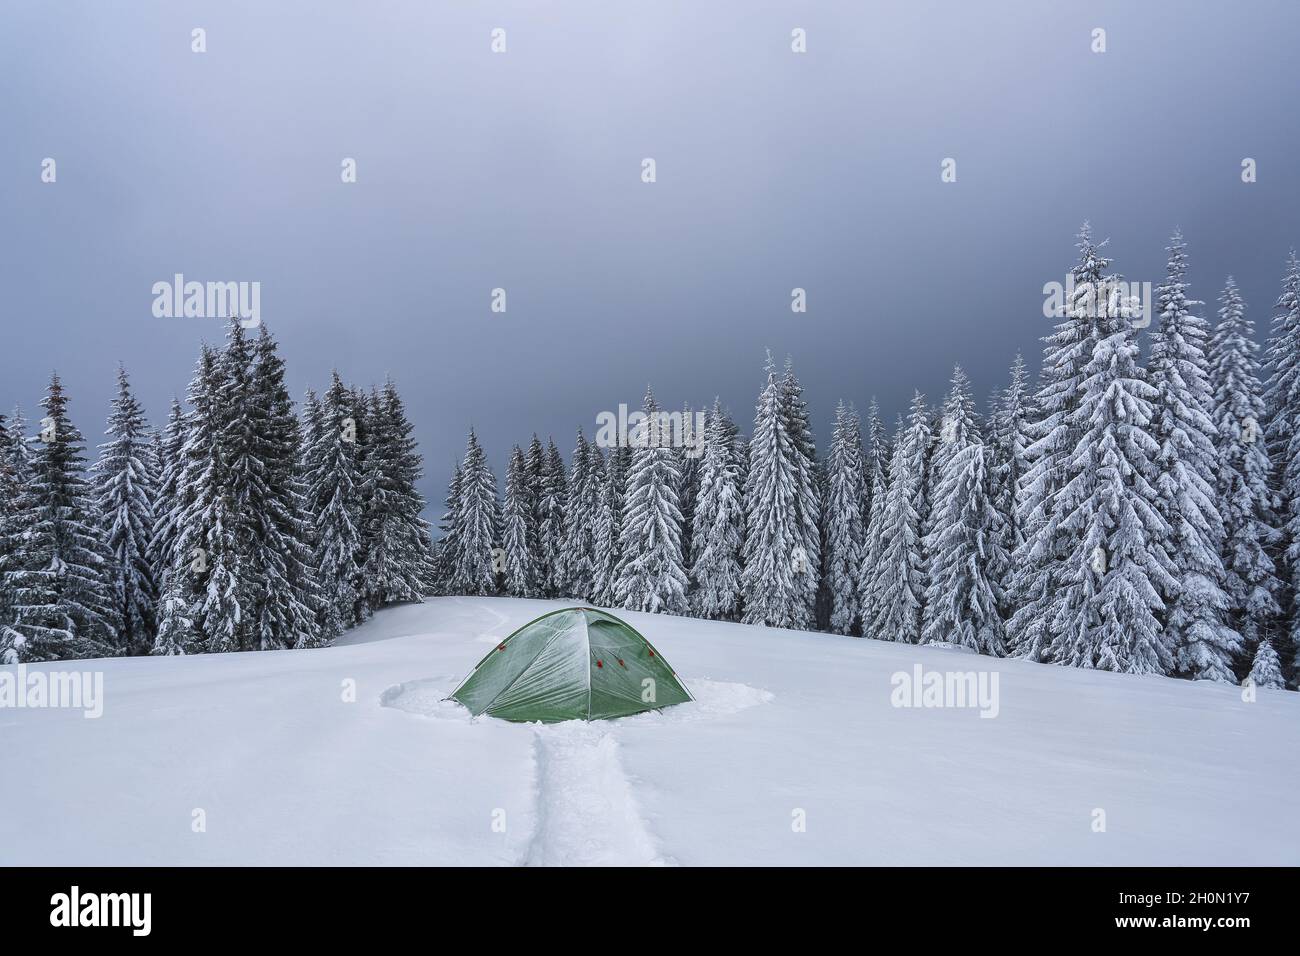 Kalter Wintertag. Grünes Zelt steht auf dem verschneiten Rasen. Hohe Fichten. Touristischer Campingplatz Rastplatz. Berglandschaft. Erstaunliche Wald bedeckt mit Stockfoto